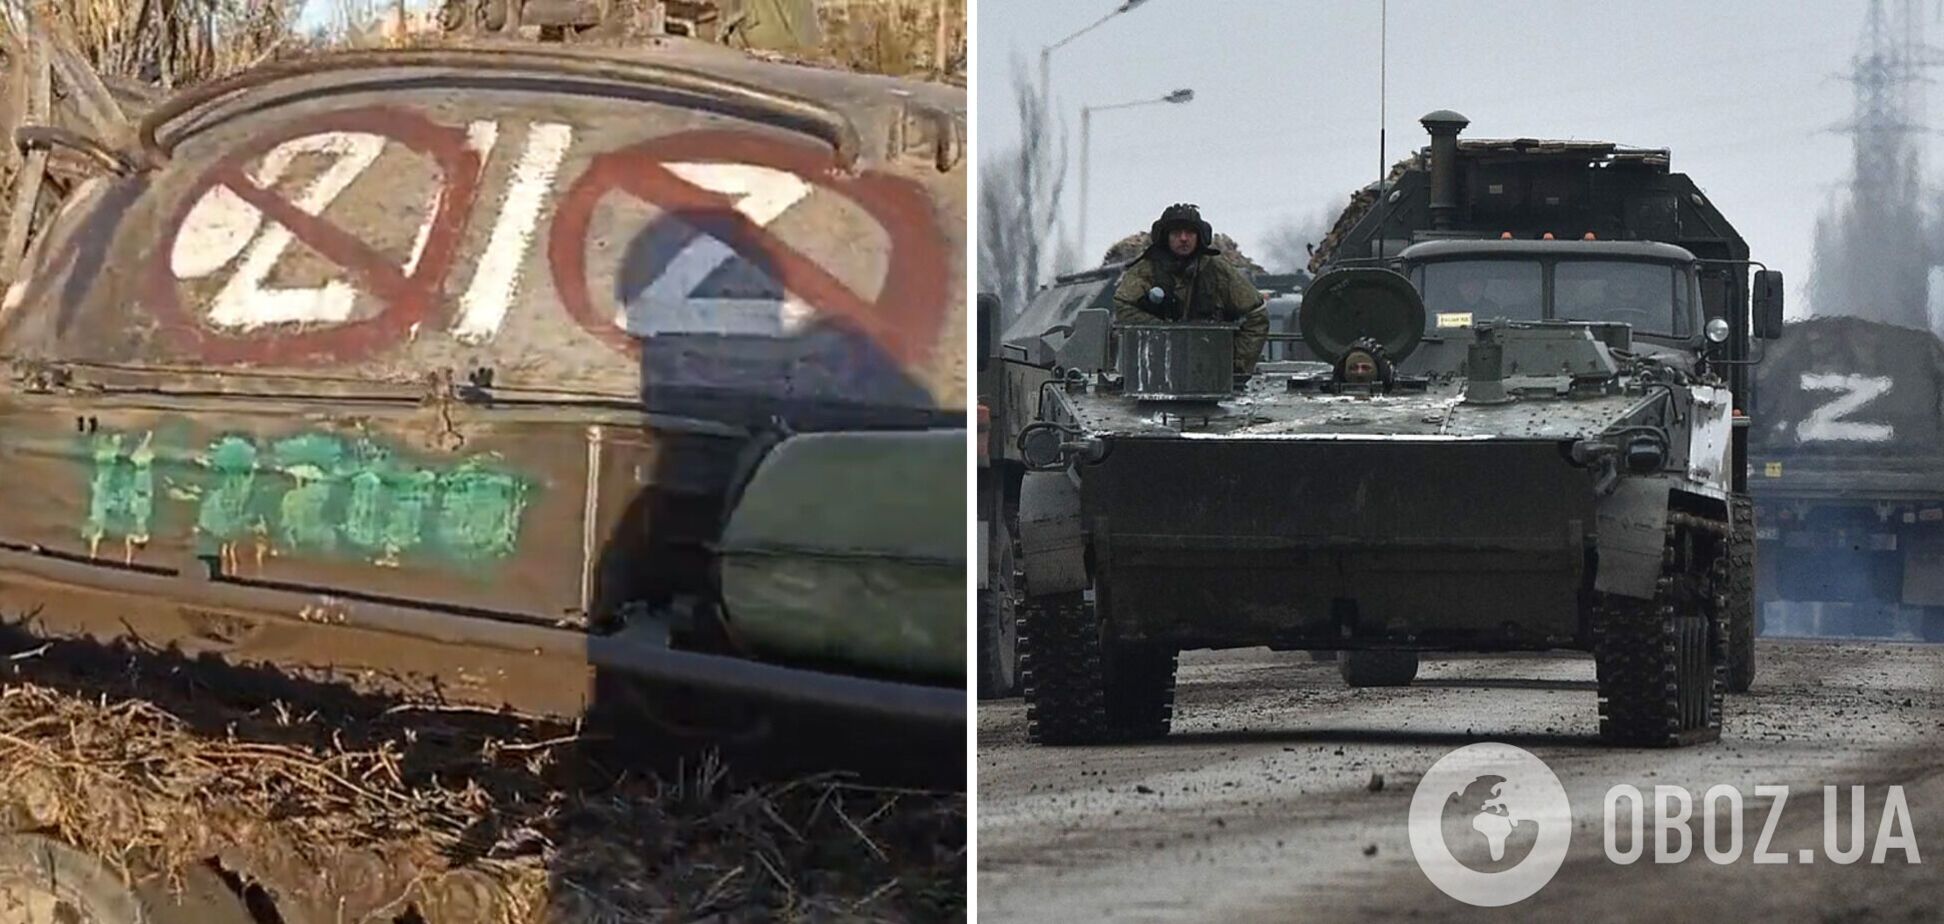 Окупанти притягнули на війну проти України танк 1967 року, але і той затрофеїли ЗСУ. Відео 